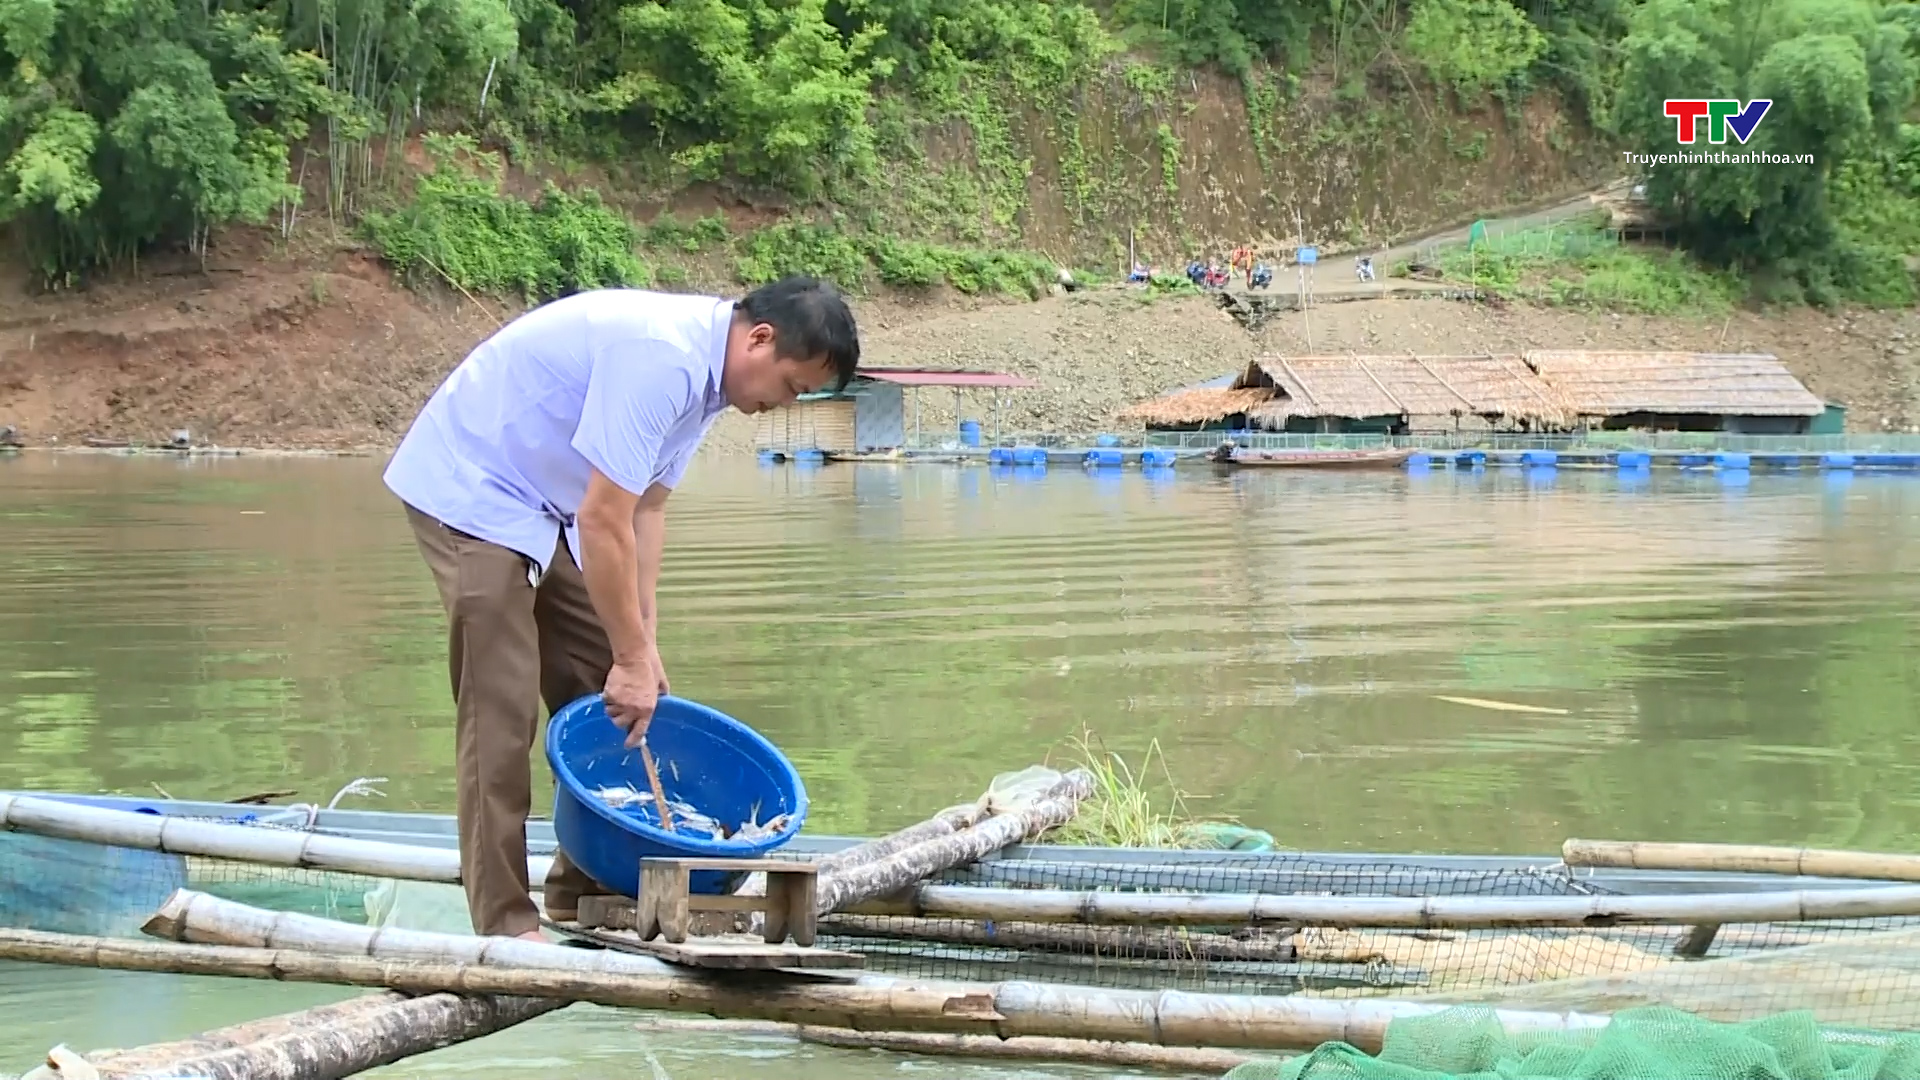 Hiệu quả kinh tế từ nghề nuôi cá lồng ở thủy điện Trung Sơn- Ảnh 3.